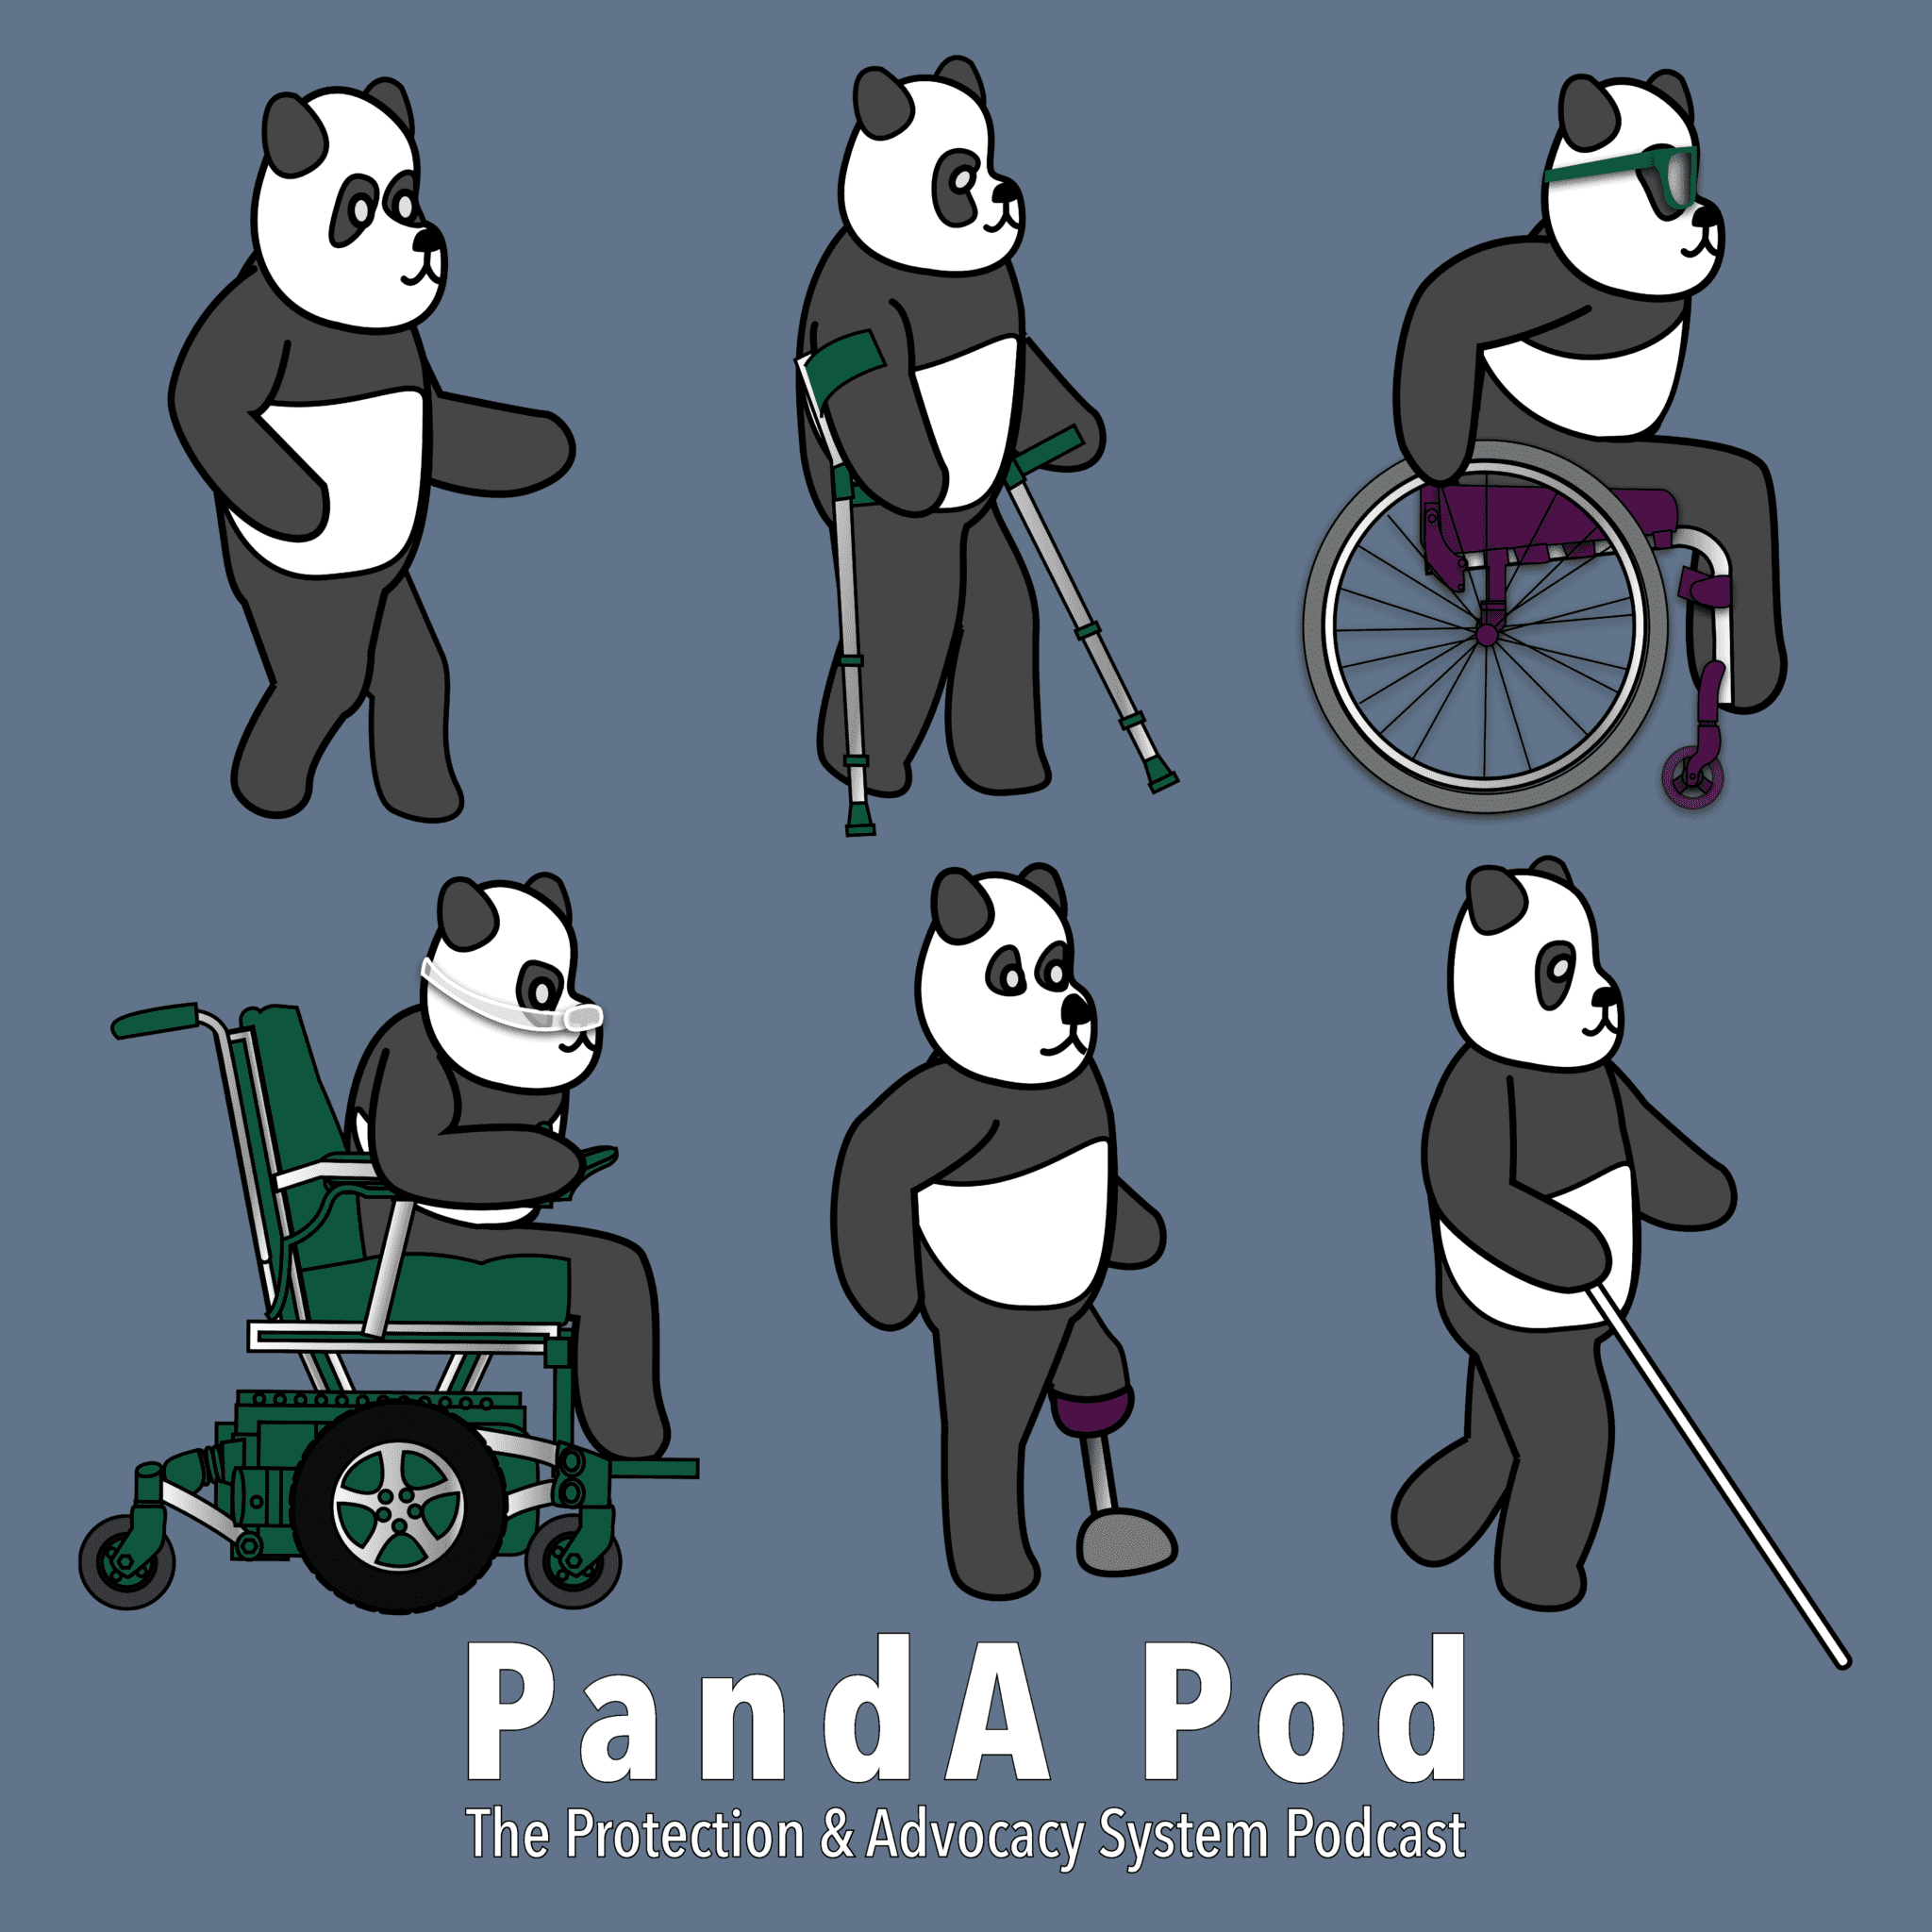 Pandas with disabilities